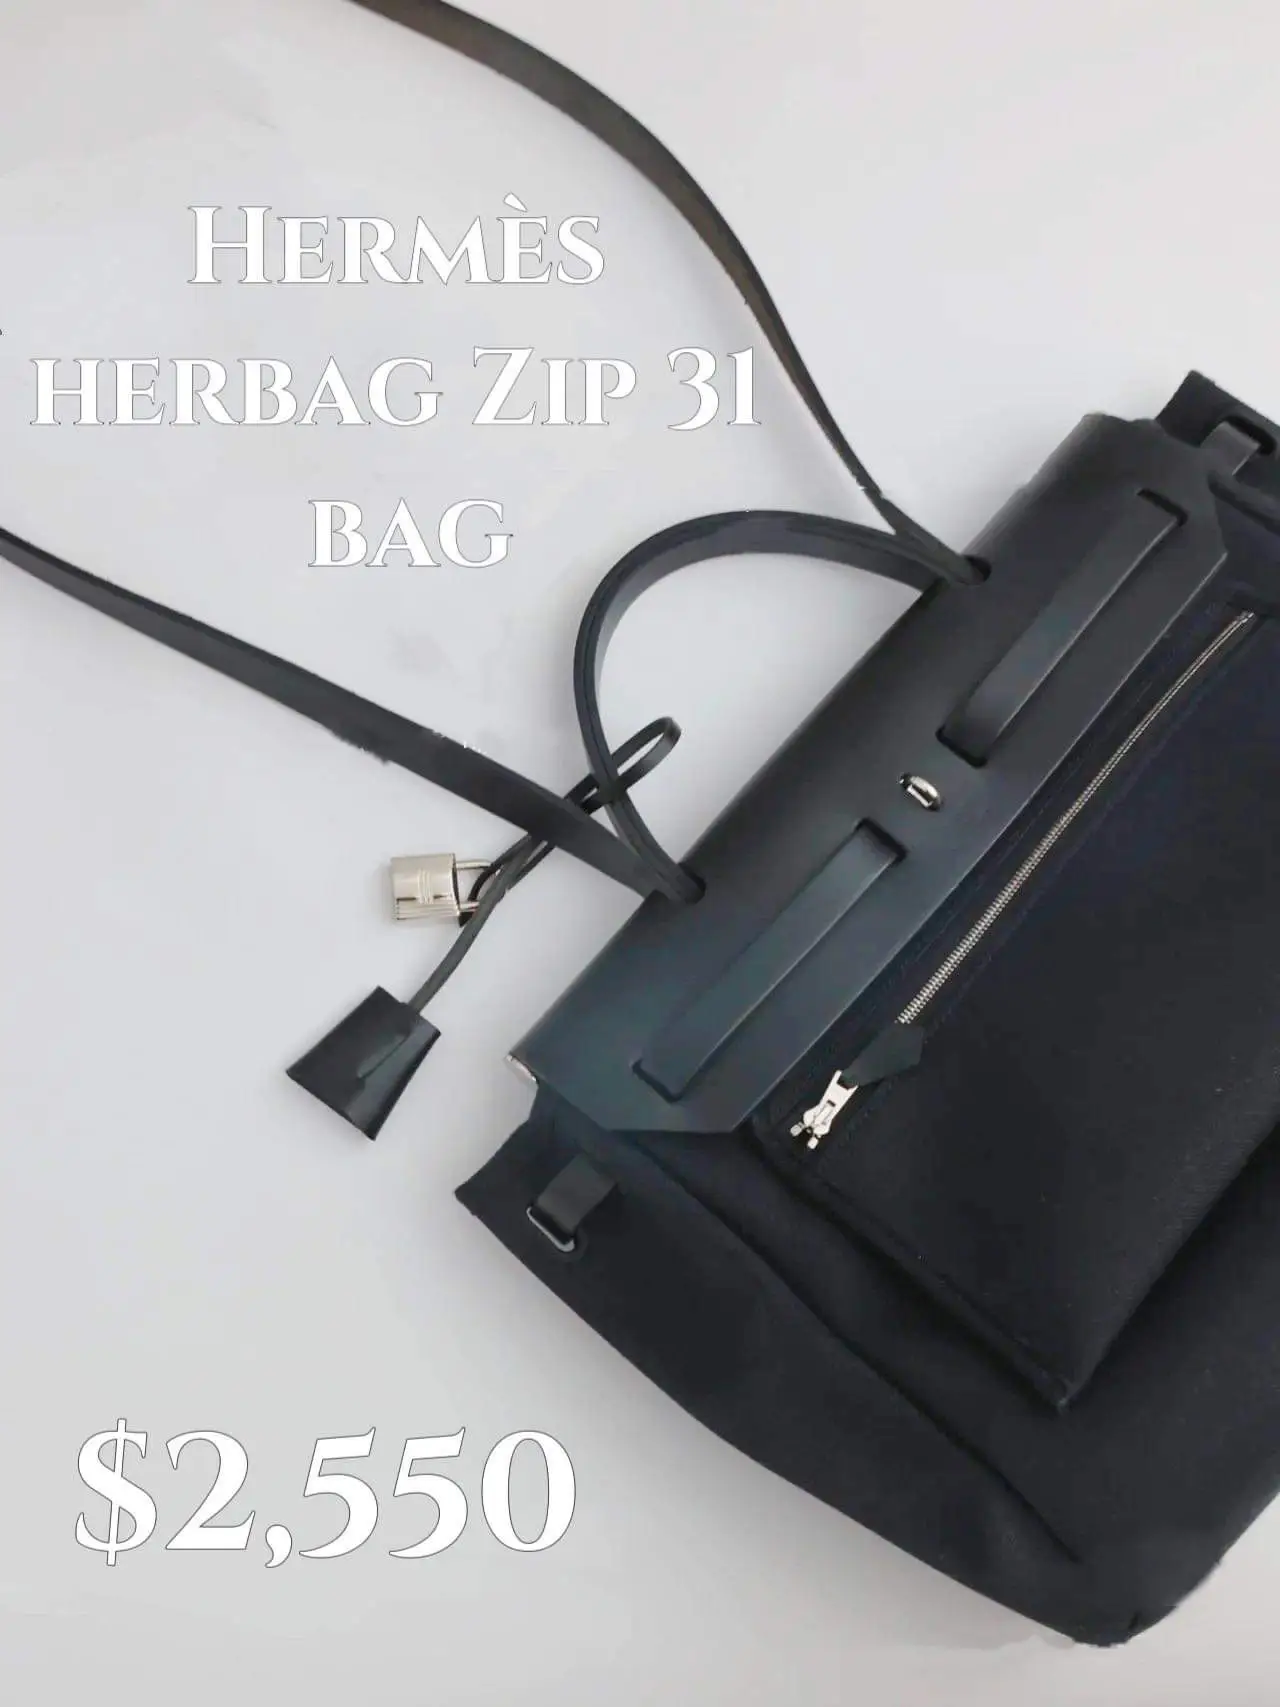 Vintage Hermes Herbag vs Herbag 31 Zip: Which Should You Buy? 